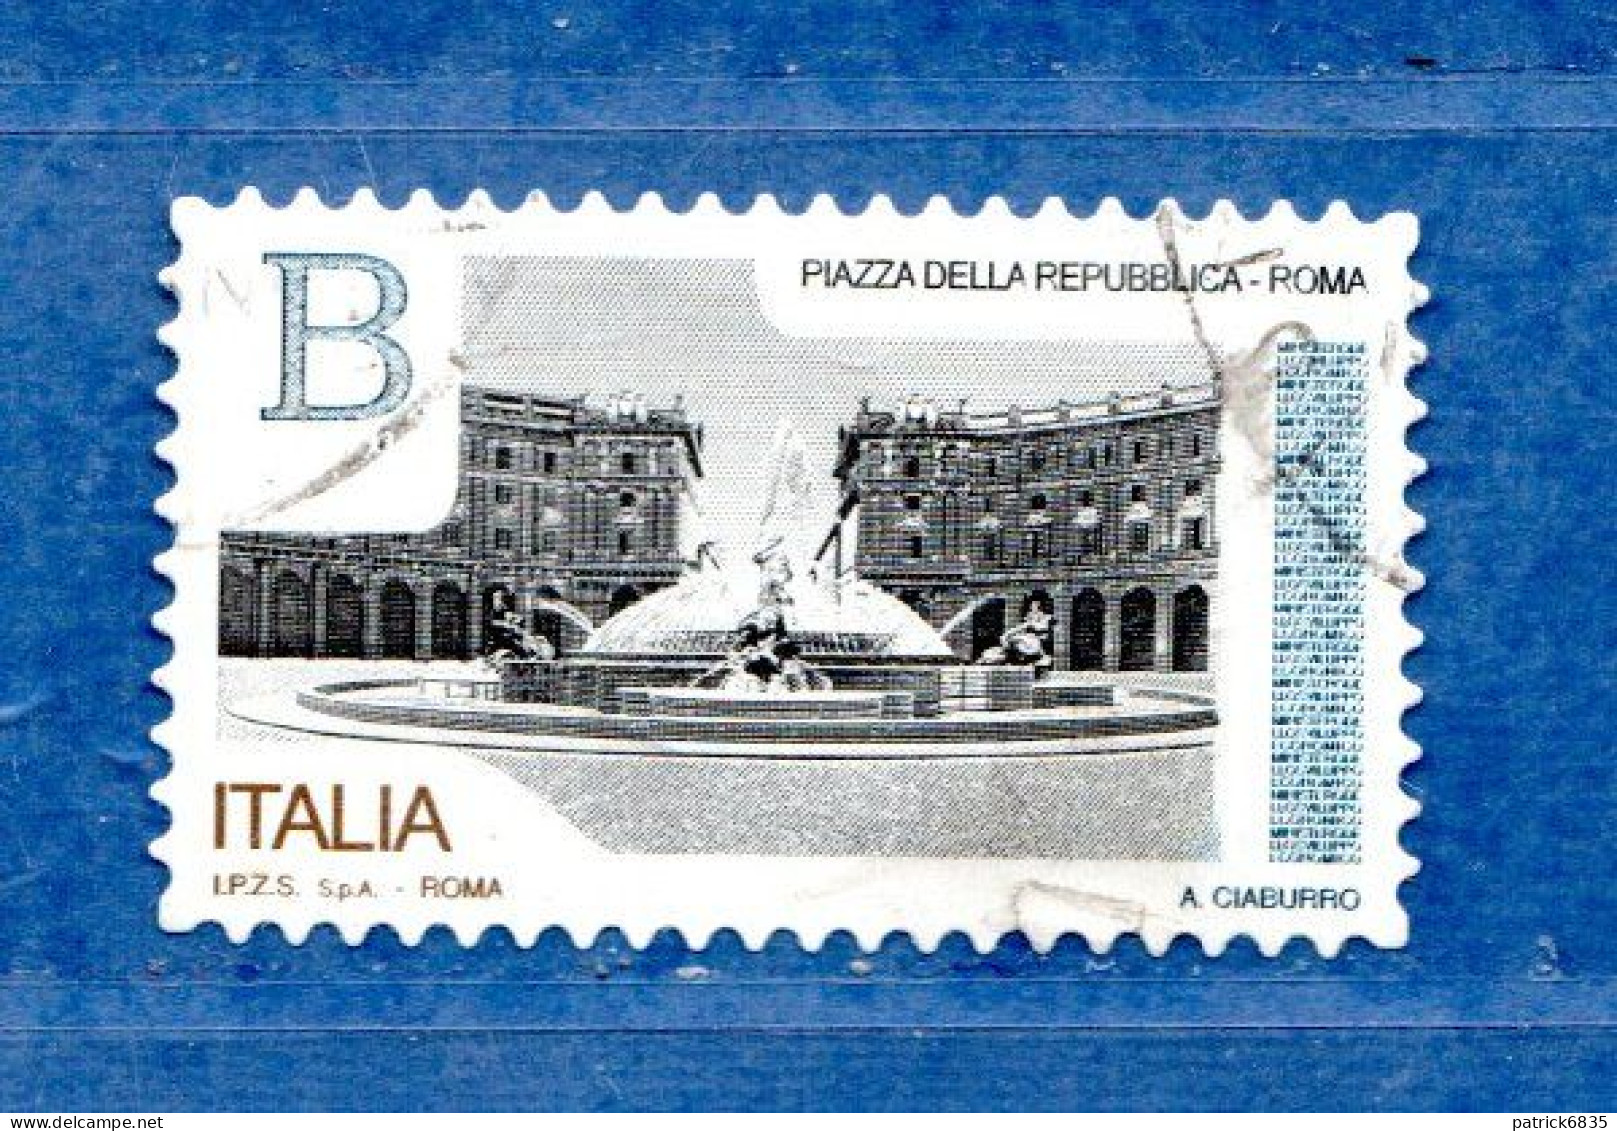 Italia ° -  2016 - Piazze D'Italia - Pizza Della Repubblica ROMA. Unif. 3760. Usato - 2011-20: Used